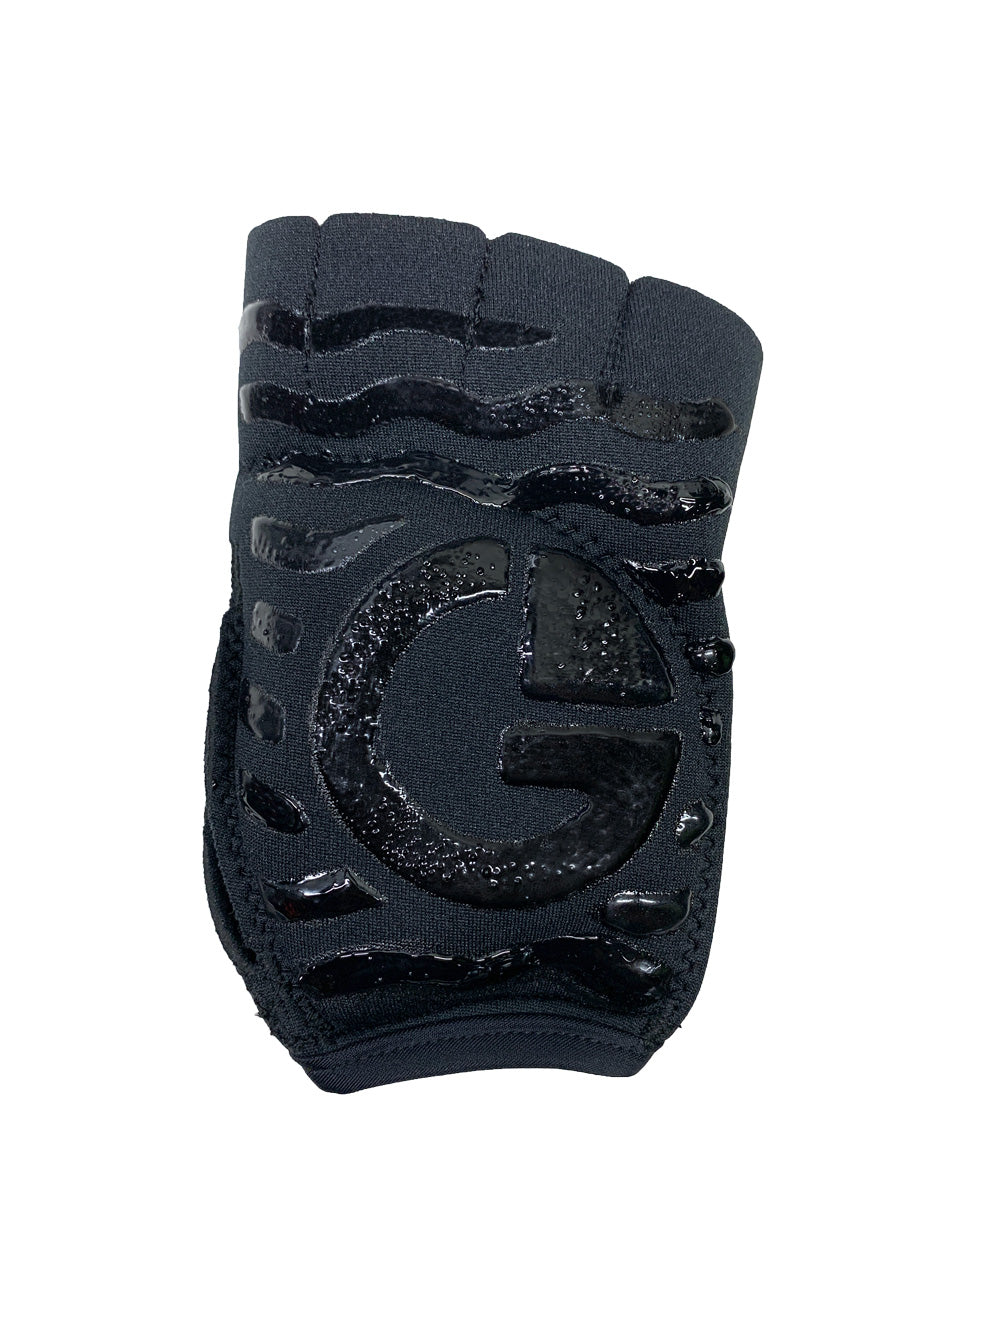 Men's Black Gelometrics Gloves